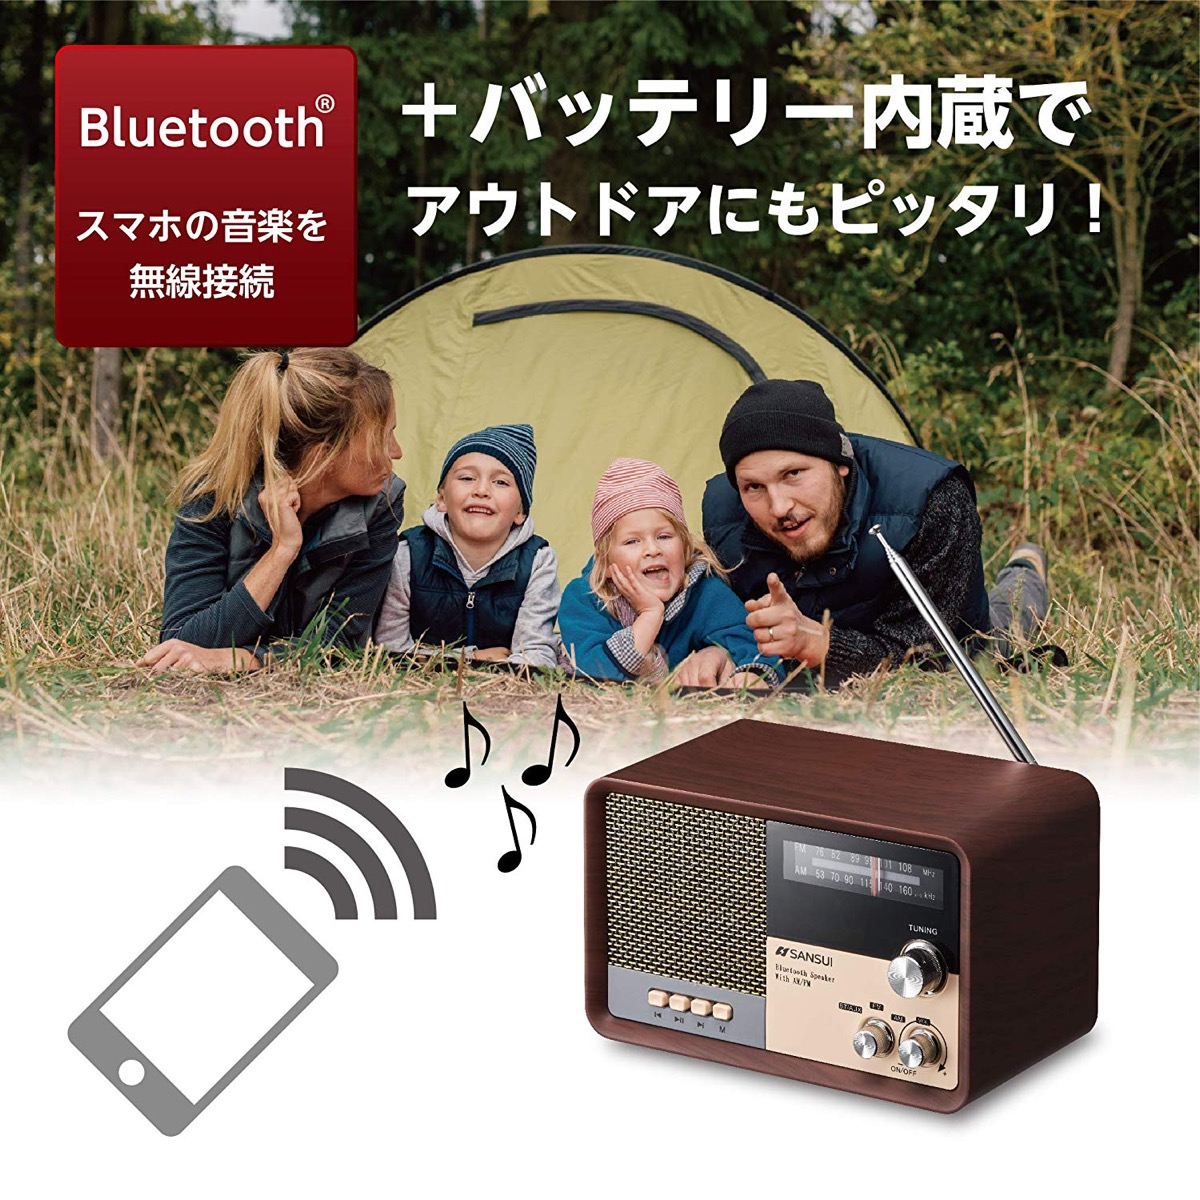 楽天市場 Sansui サンスイ Msr 1 Wd Am Fm ラジオ スピーカー ウッド Bluetooth Iphone スマホ 対応 レトロ オーディオ R Apマーケット